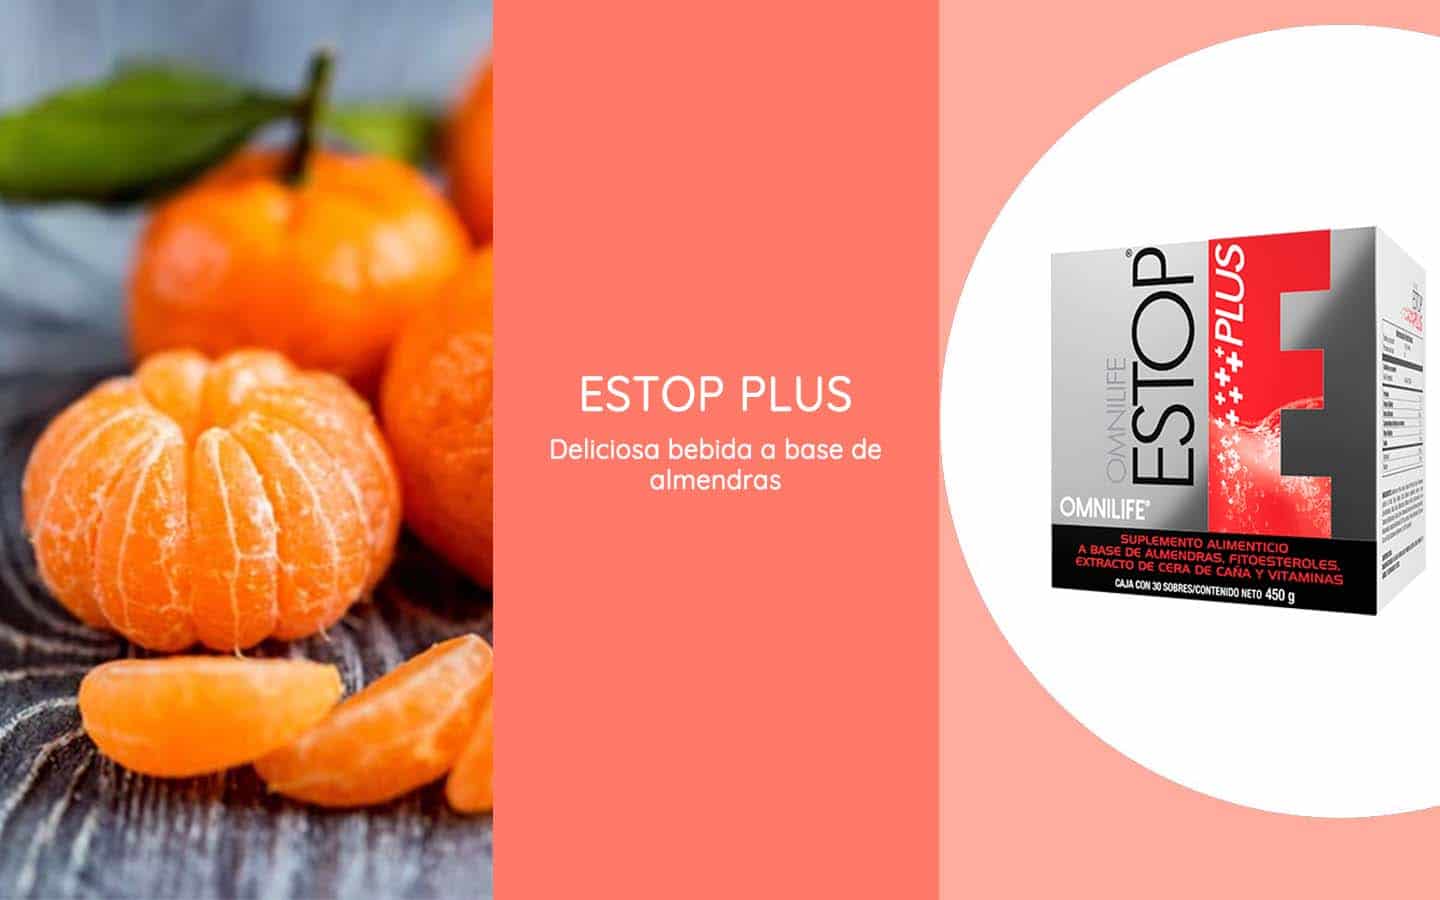 Estop Plus es una deliciosa bebida a base de almendras con nutrientes que fortalecen el sistema cardiovascular